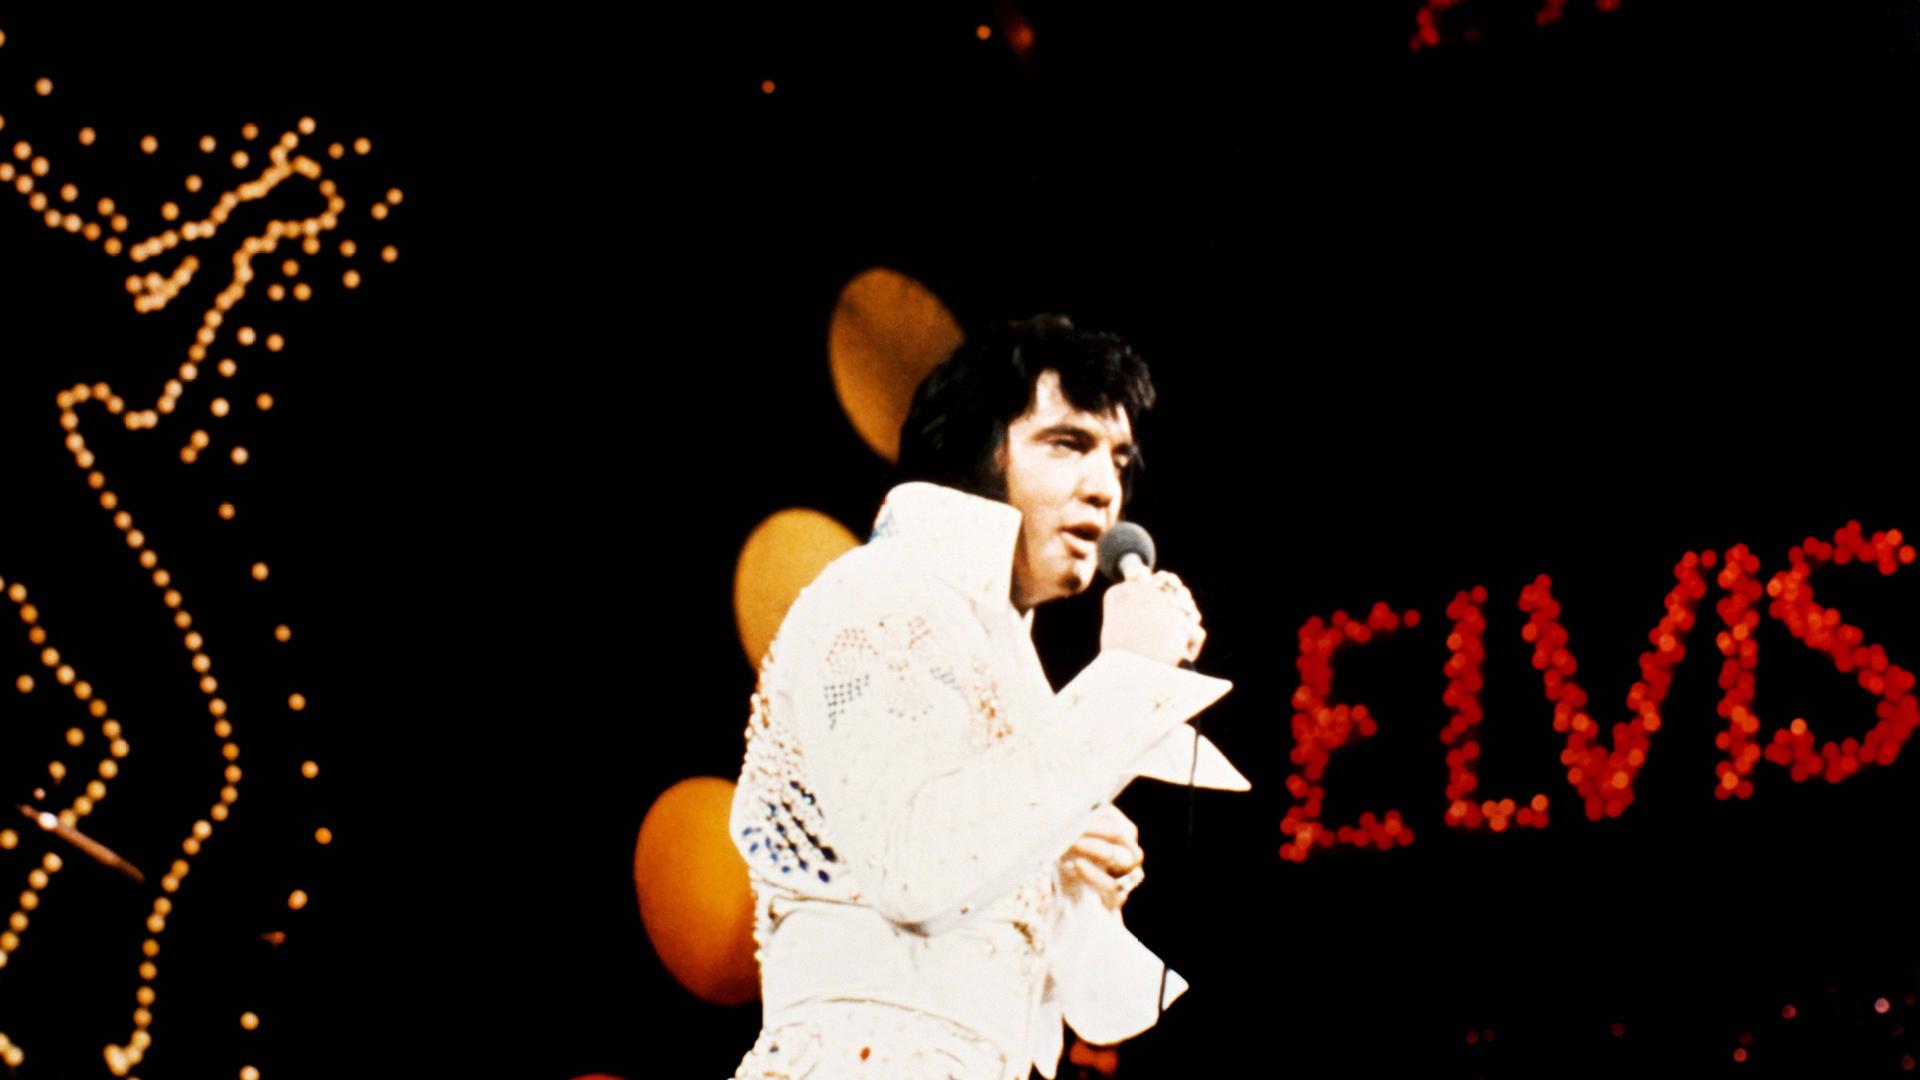  Elvis Presley bei seinem Konzert "Aloha from Hawaii", am 14. Januar 1973 in  Honolulu.